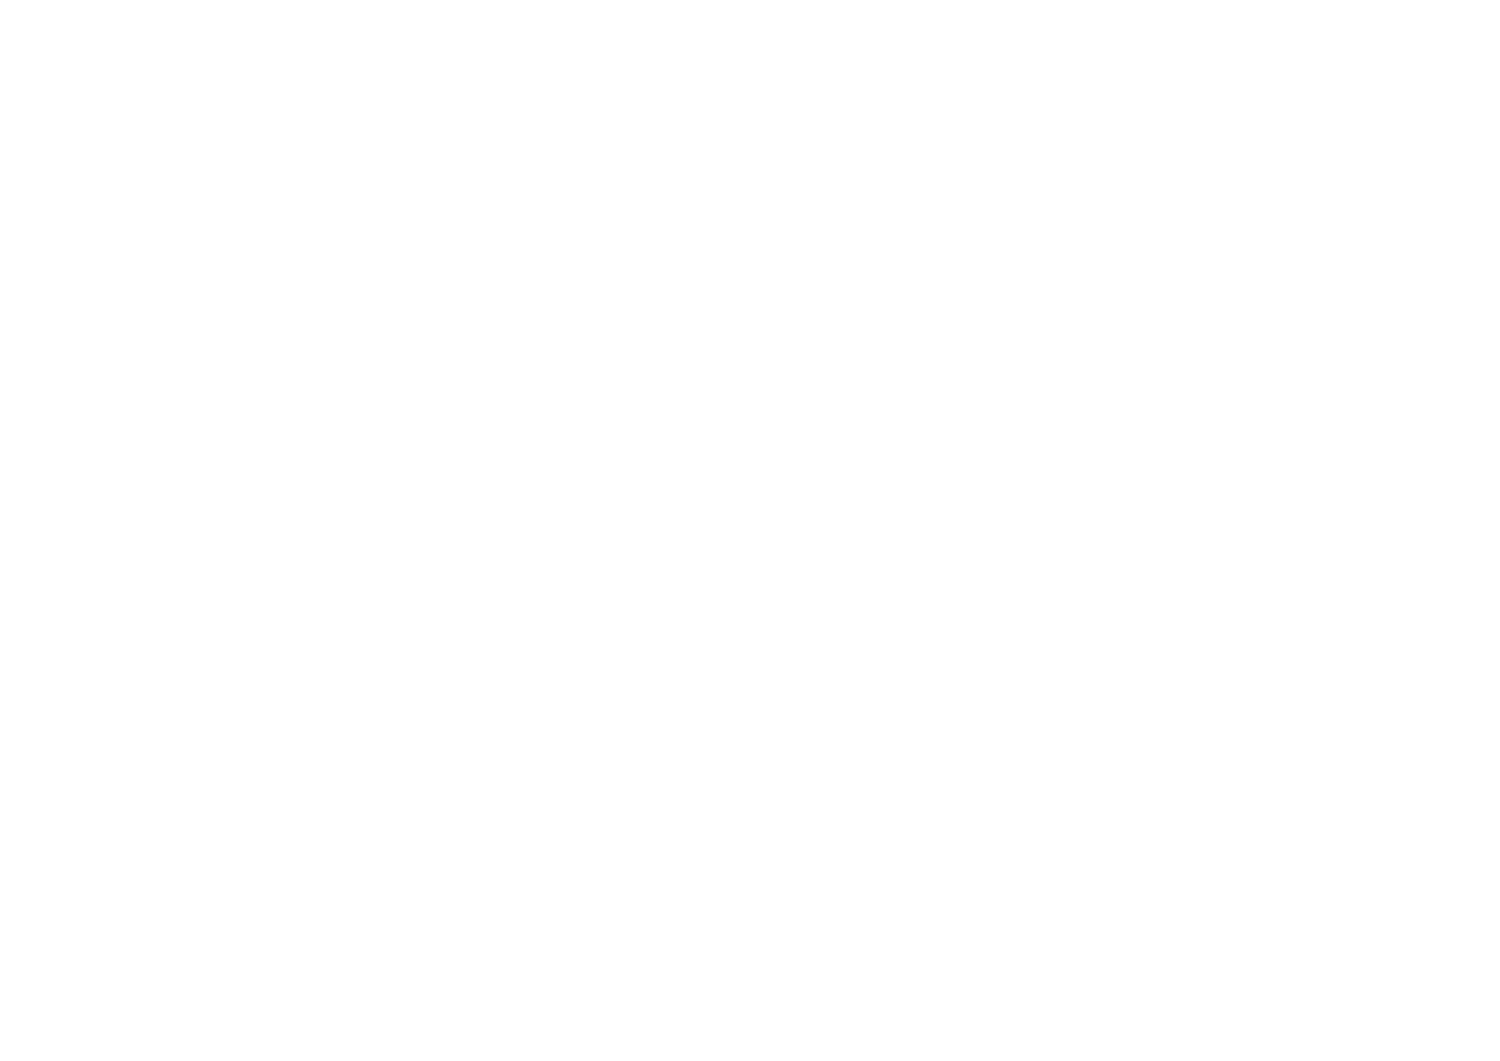 Mols Kafferisteri